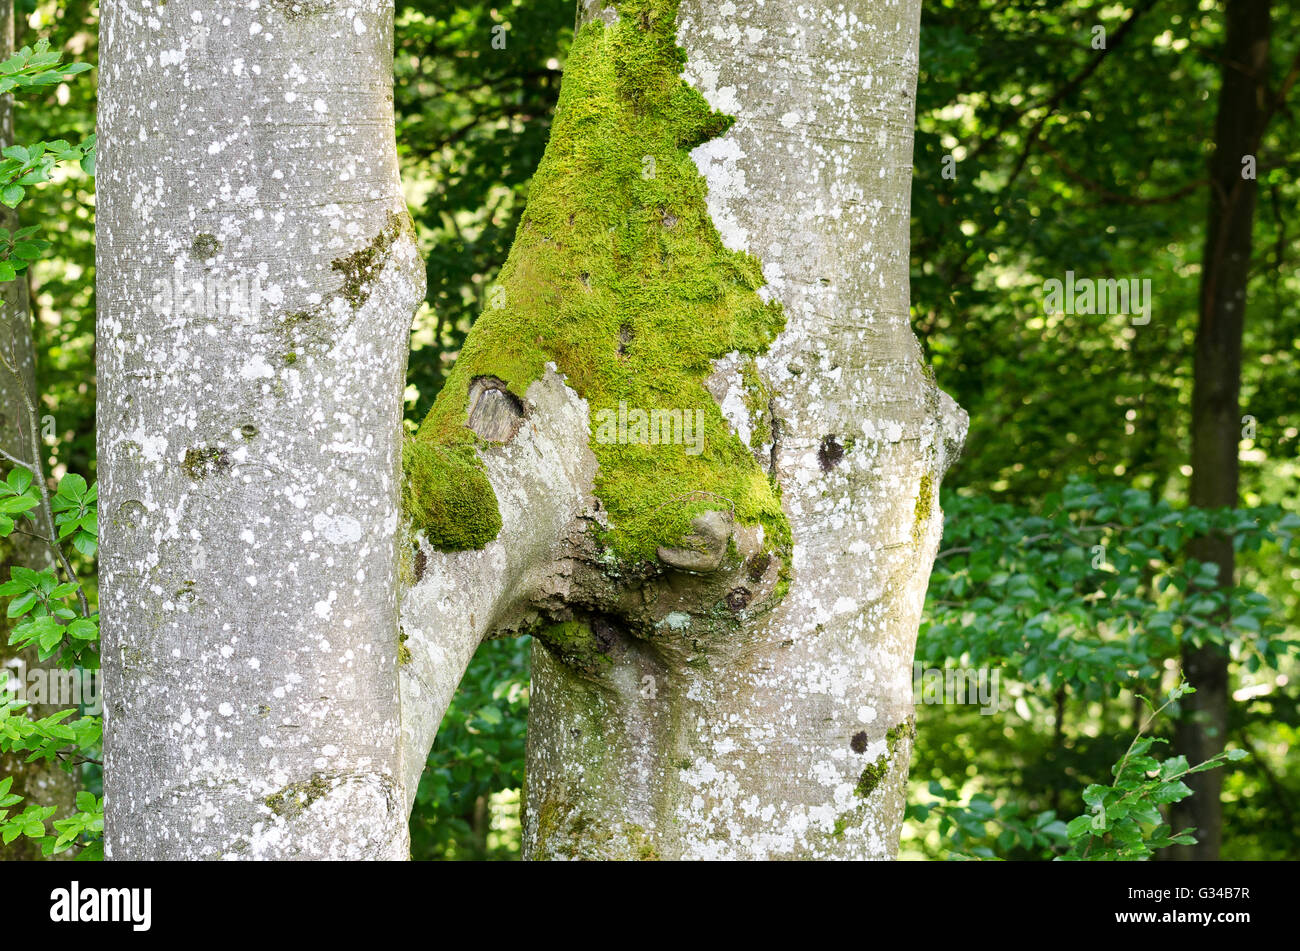 Zwei Buche Bäume der gleichen Spezies wachsen zusammen. Dieses natürliche Phänomen nennt man Inosculation. Stockfoto